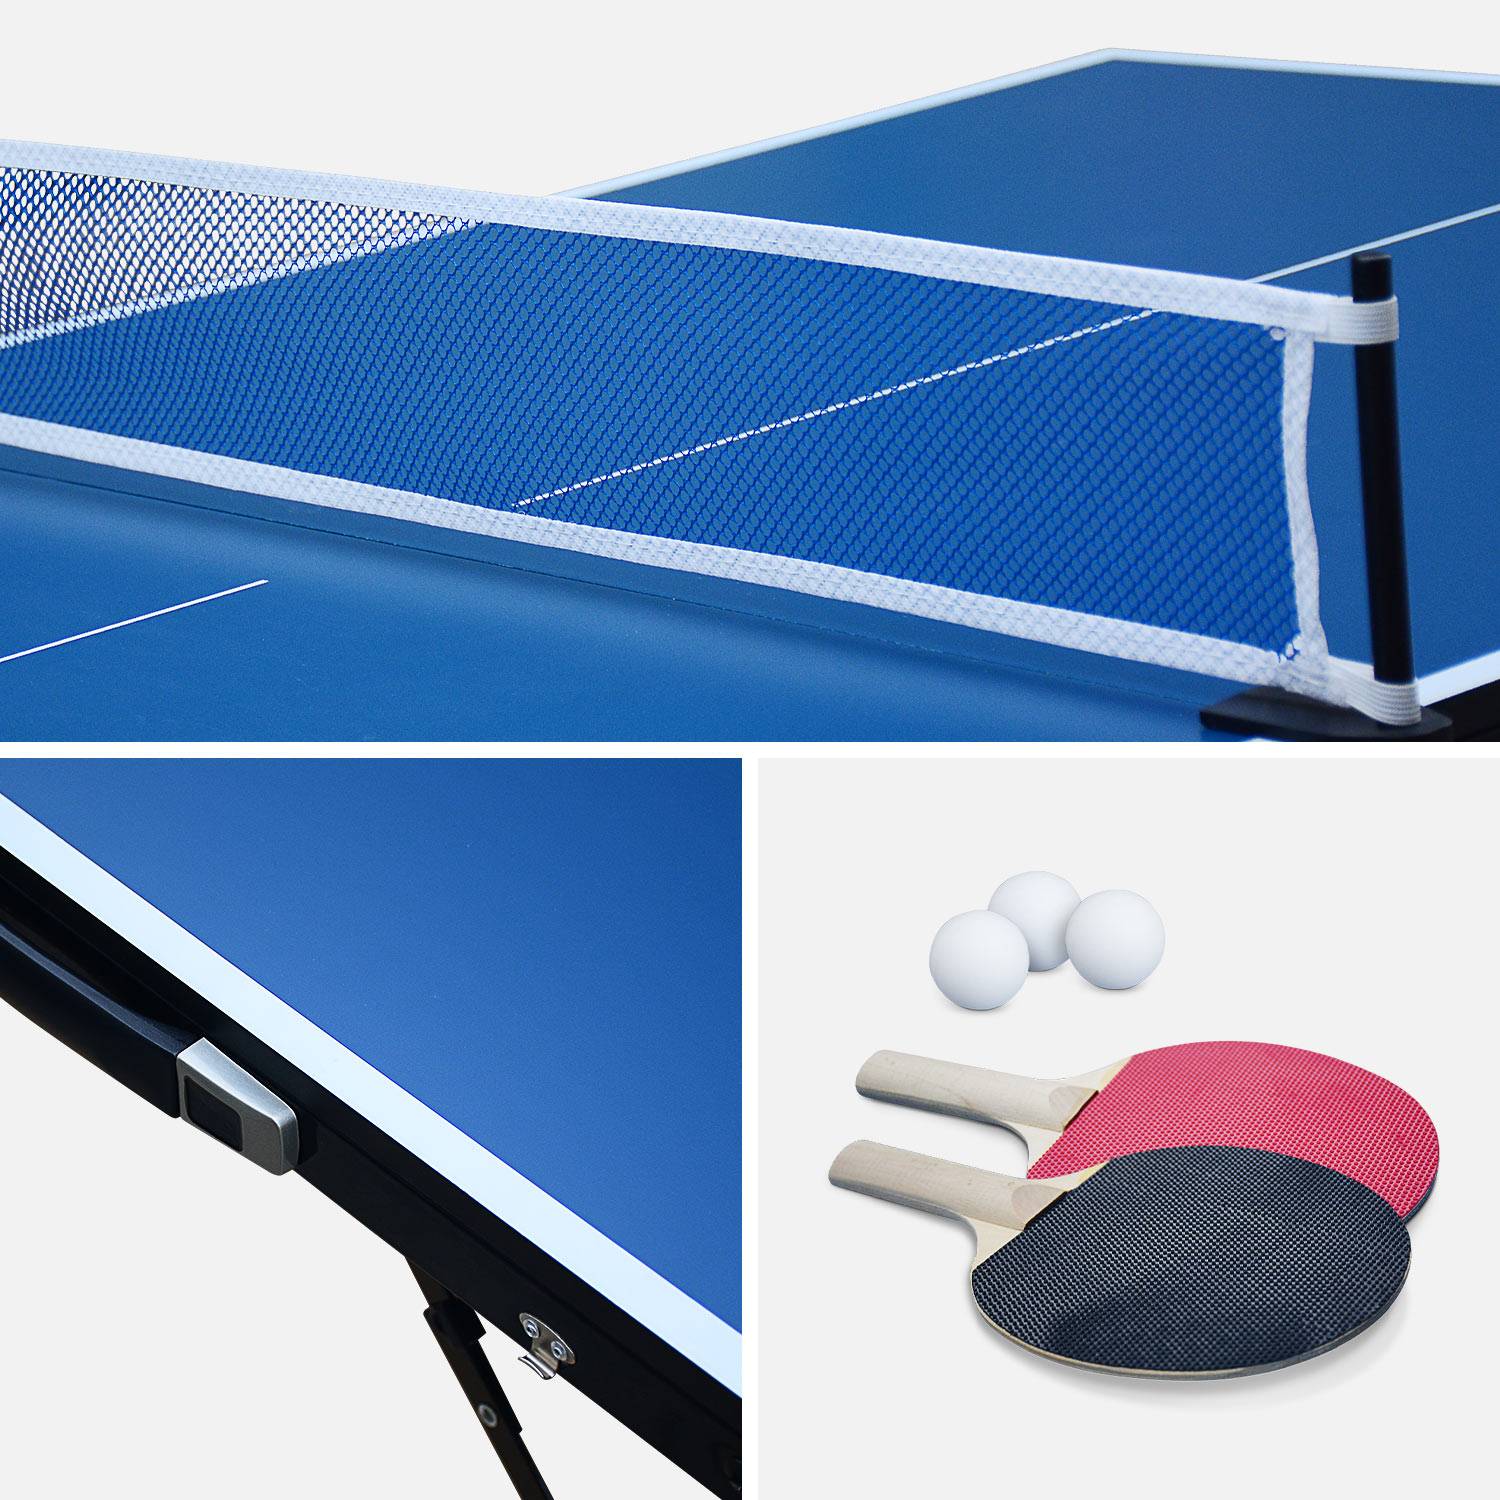 Mini table de ping pong 150x75cm - table pliable INDOOR bleue, avec 4 raquettes et 6 balles, valise de jeu pour utilisation intérieure, sport tennis de table Photo4